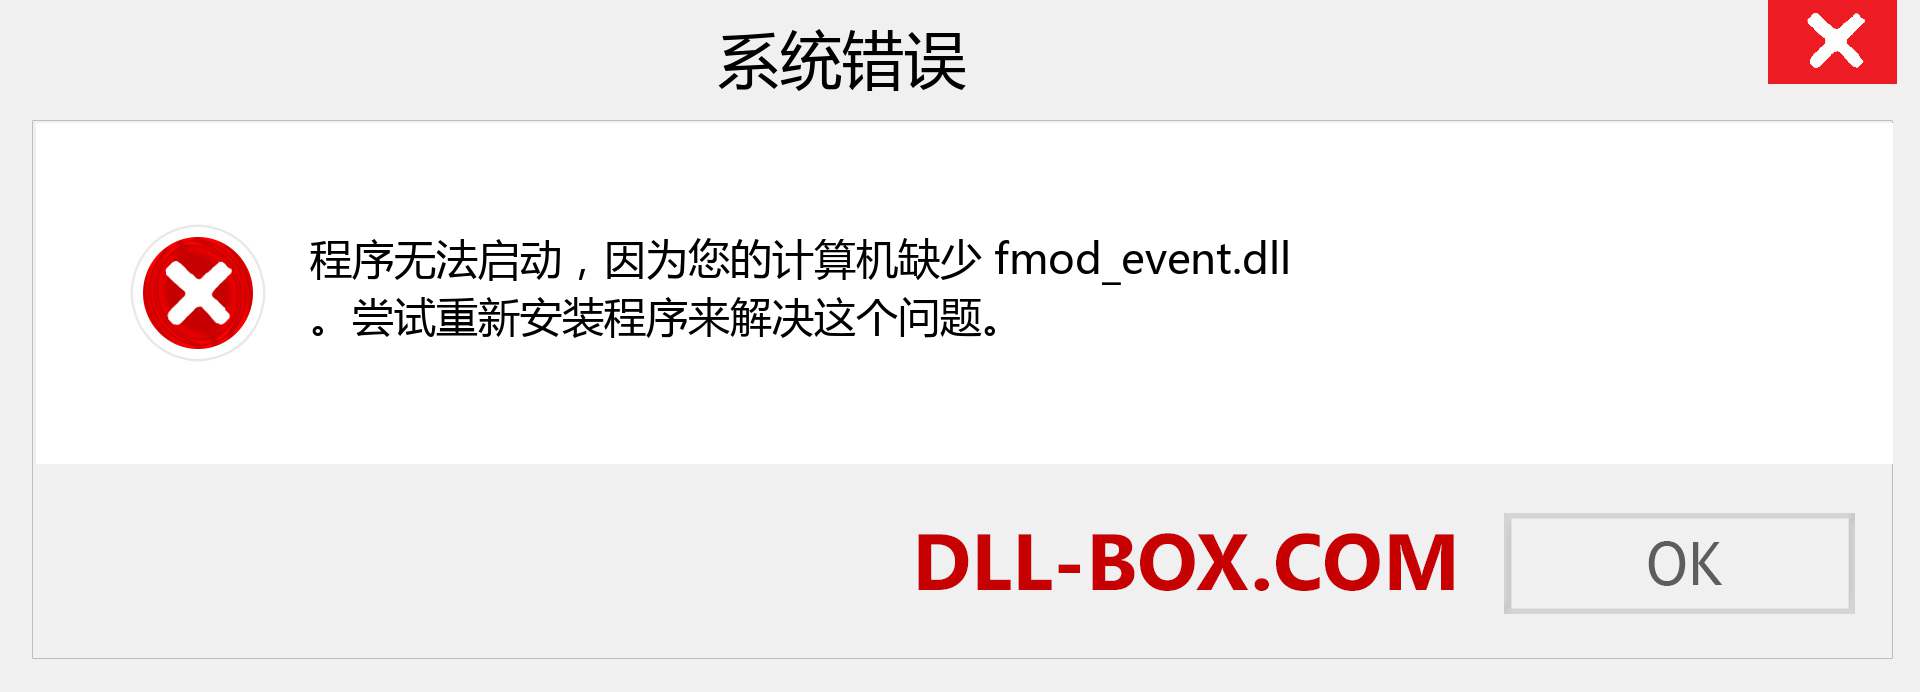 fmod_event.dll 文件丢失？。 适用于 Windows 7、8、10 的下载 - 修复 Windows、照片、图像上的 fmod_event dll 丢失错误